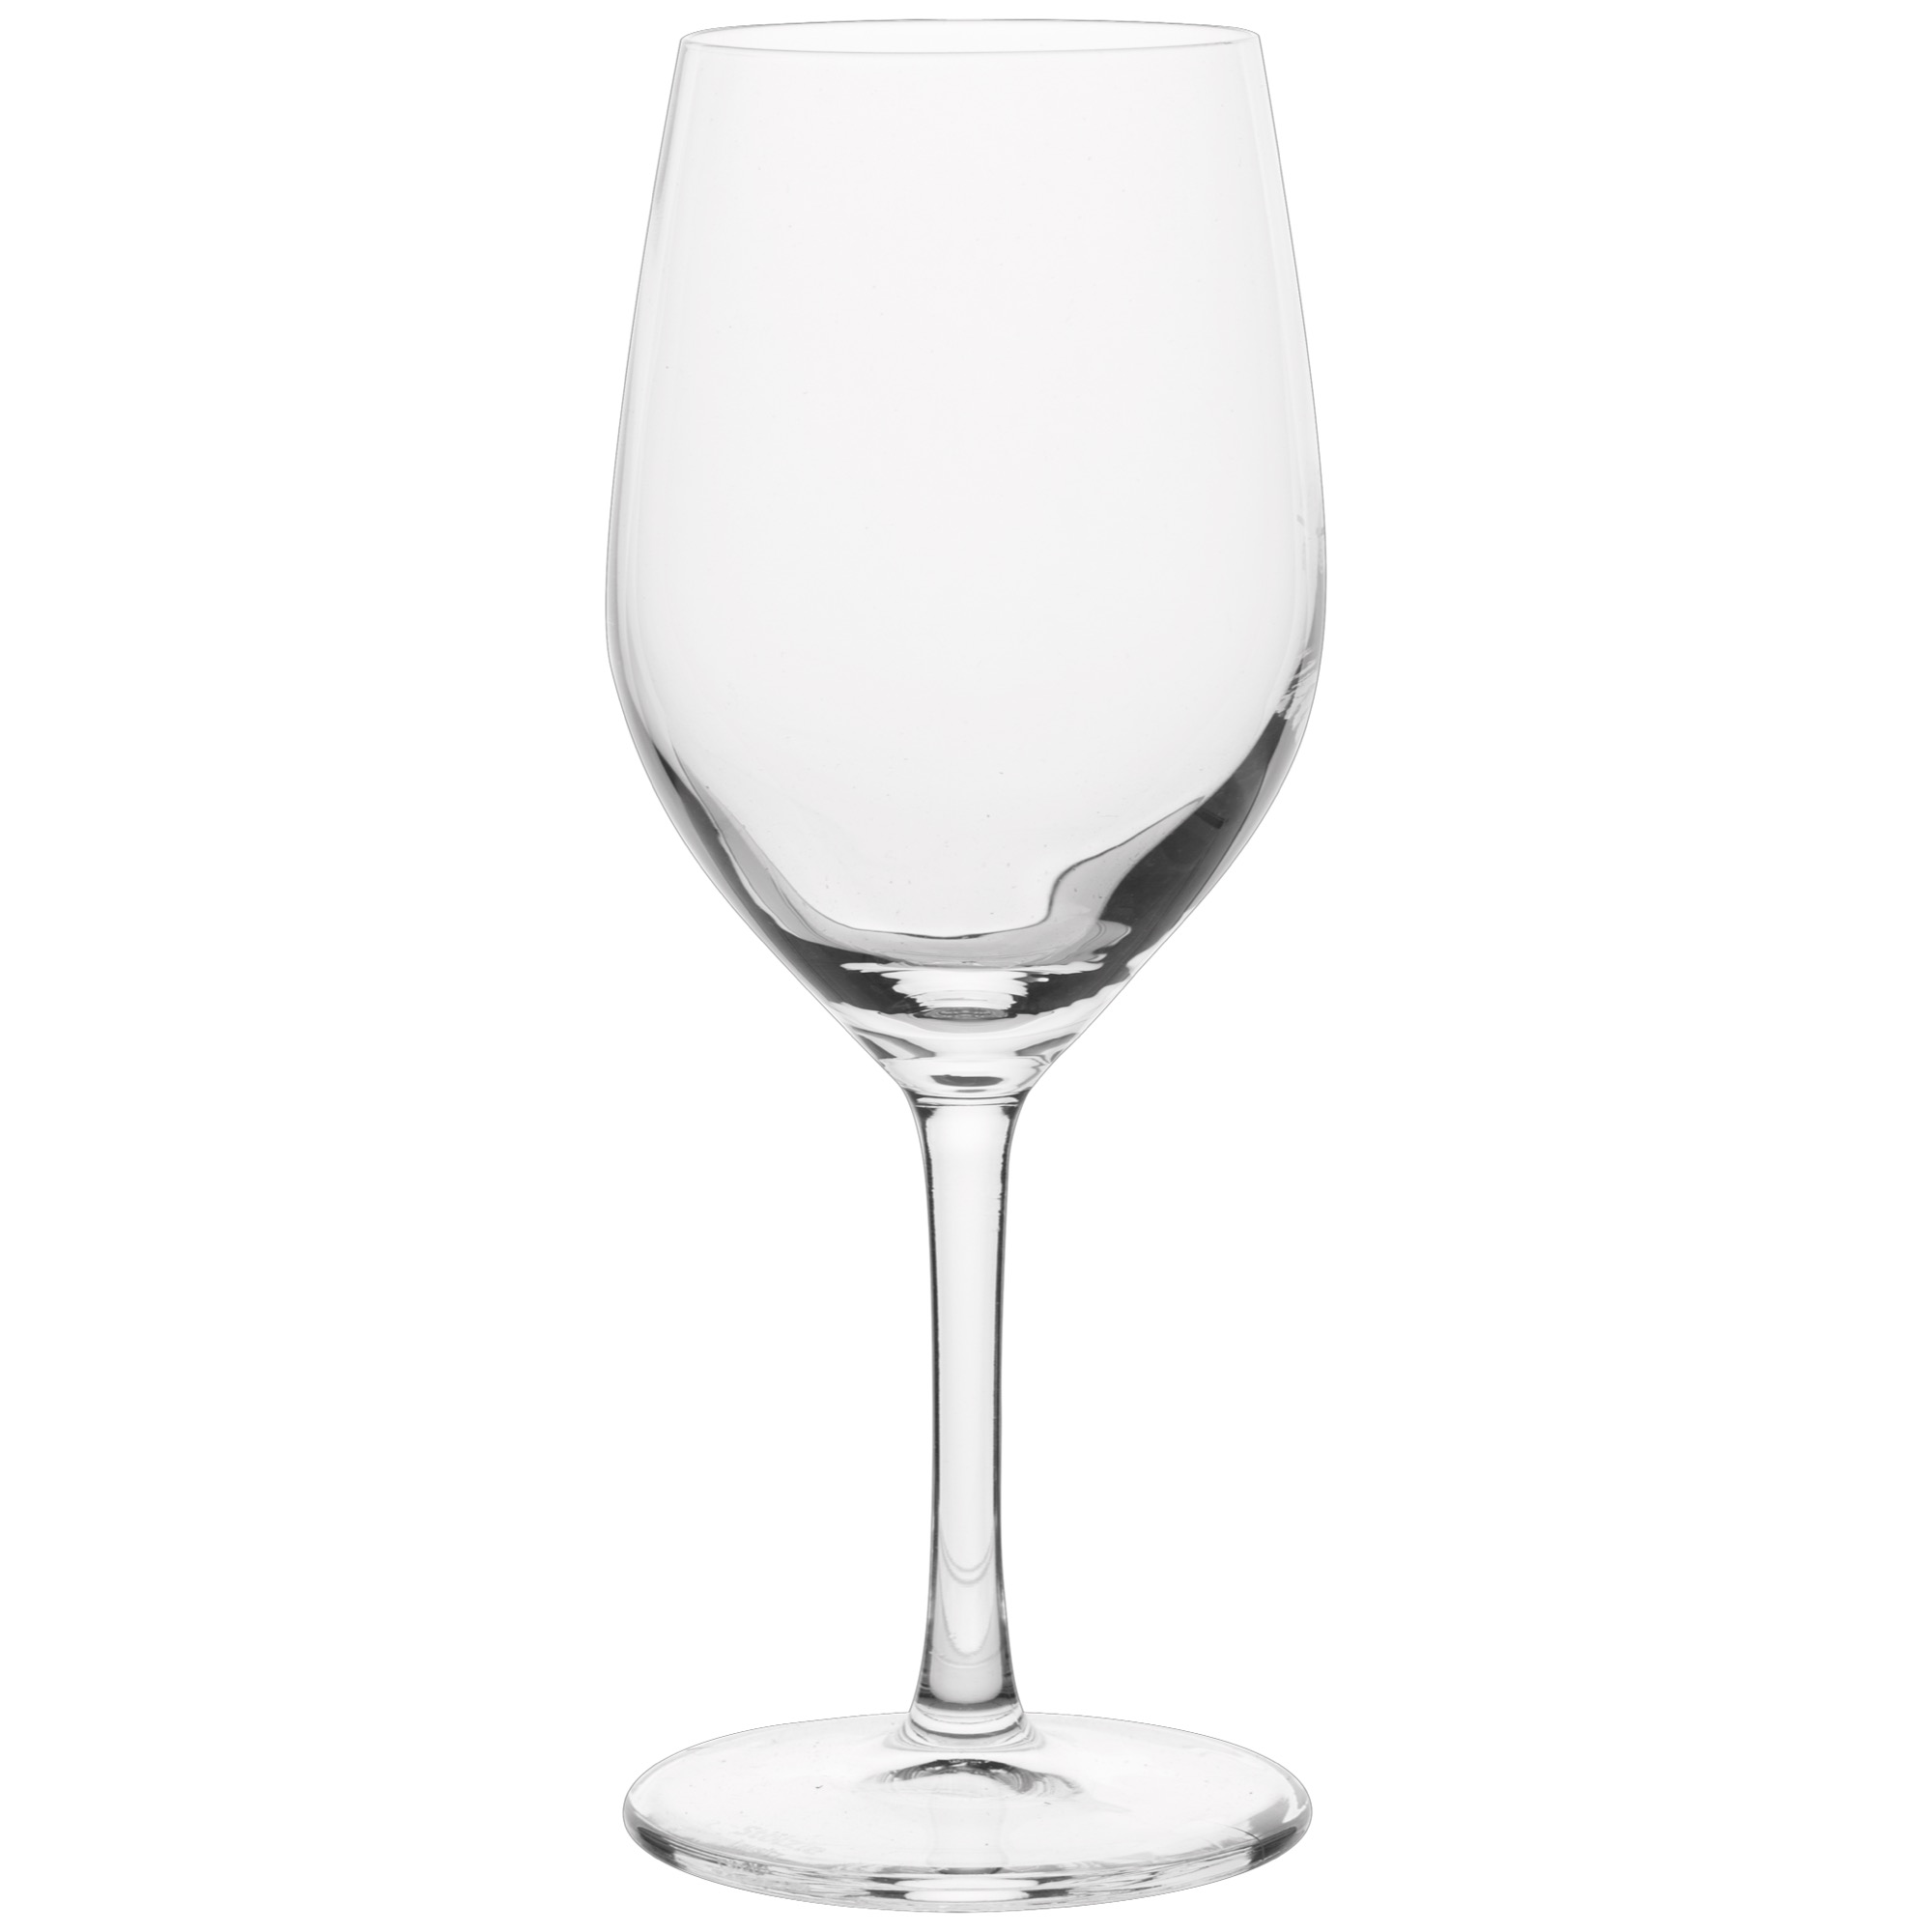 Stölzle Ultra pohár/biele víno 306ml 1/8